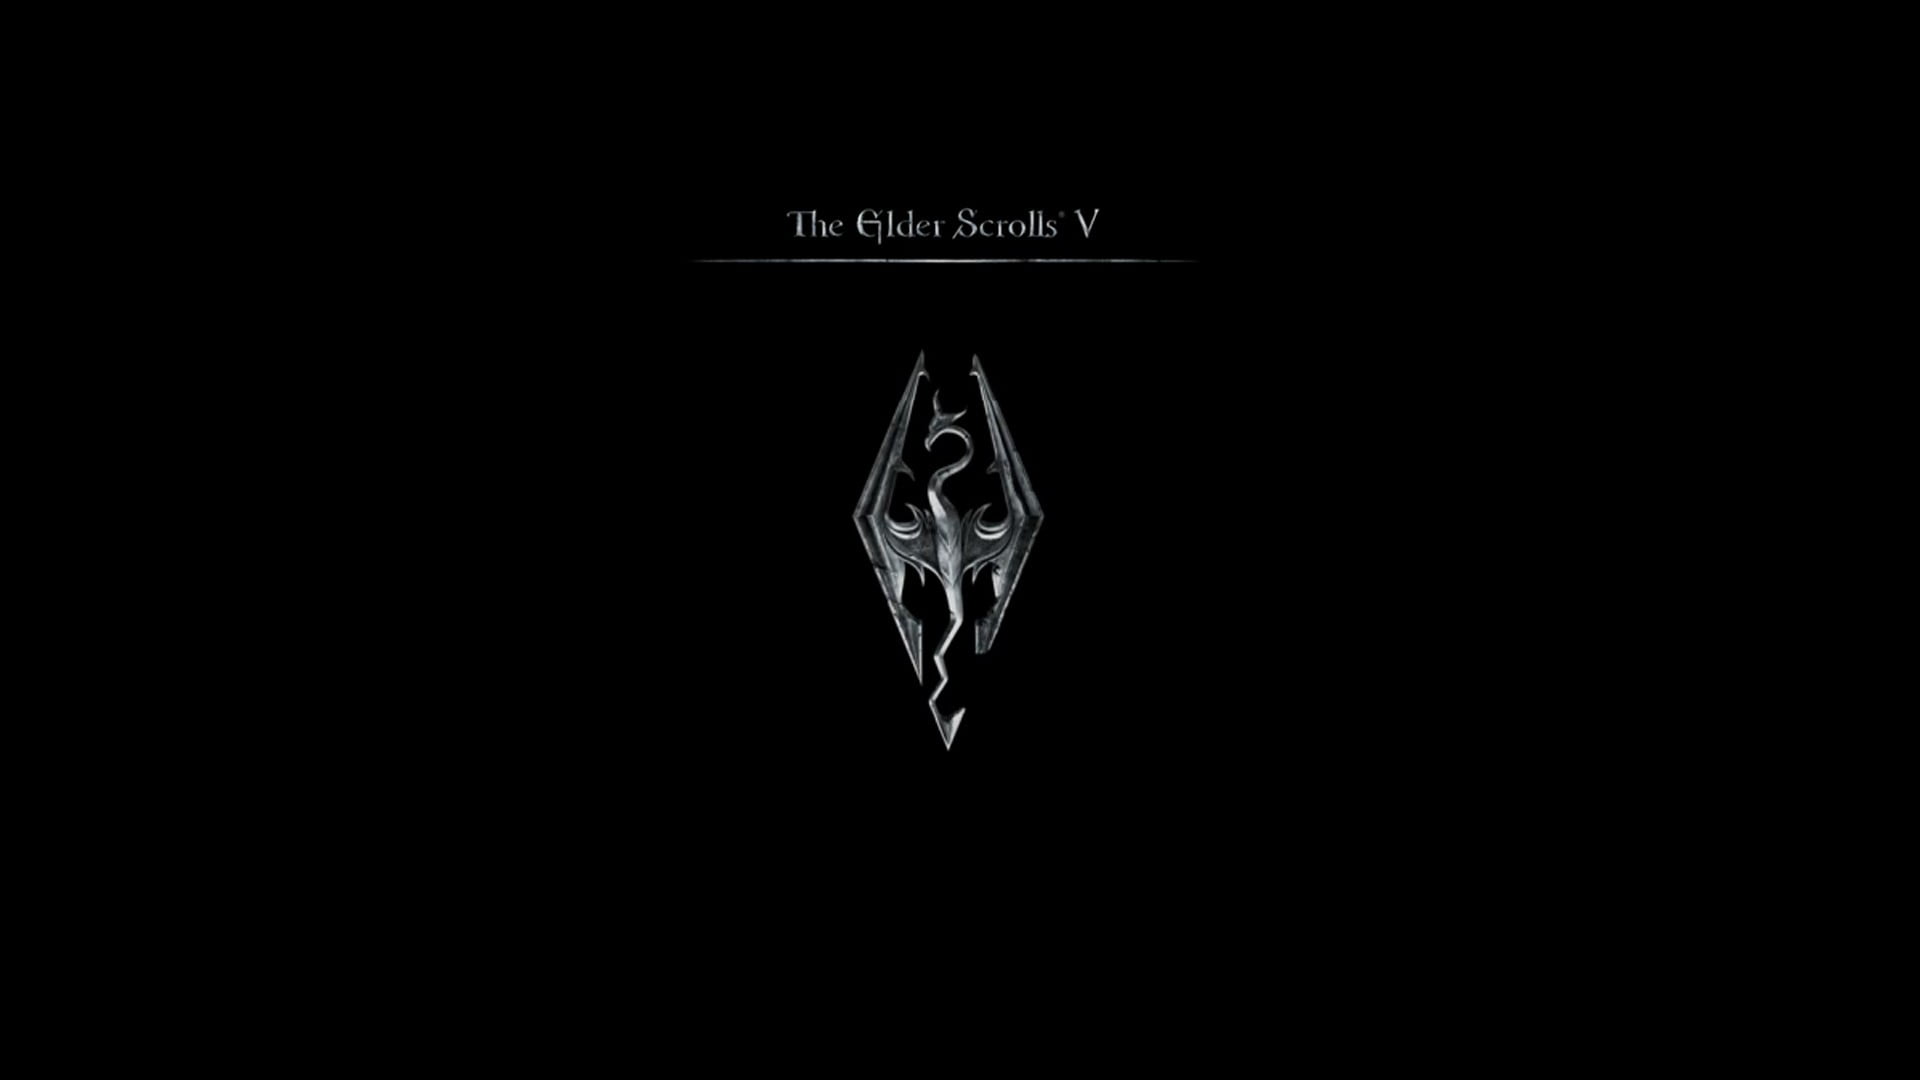 The Elder Scrolls V logo, The Elder Scrolls V: Skyrim